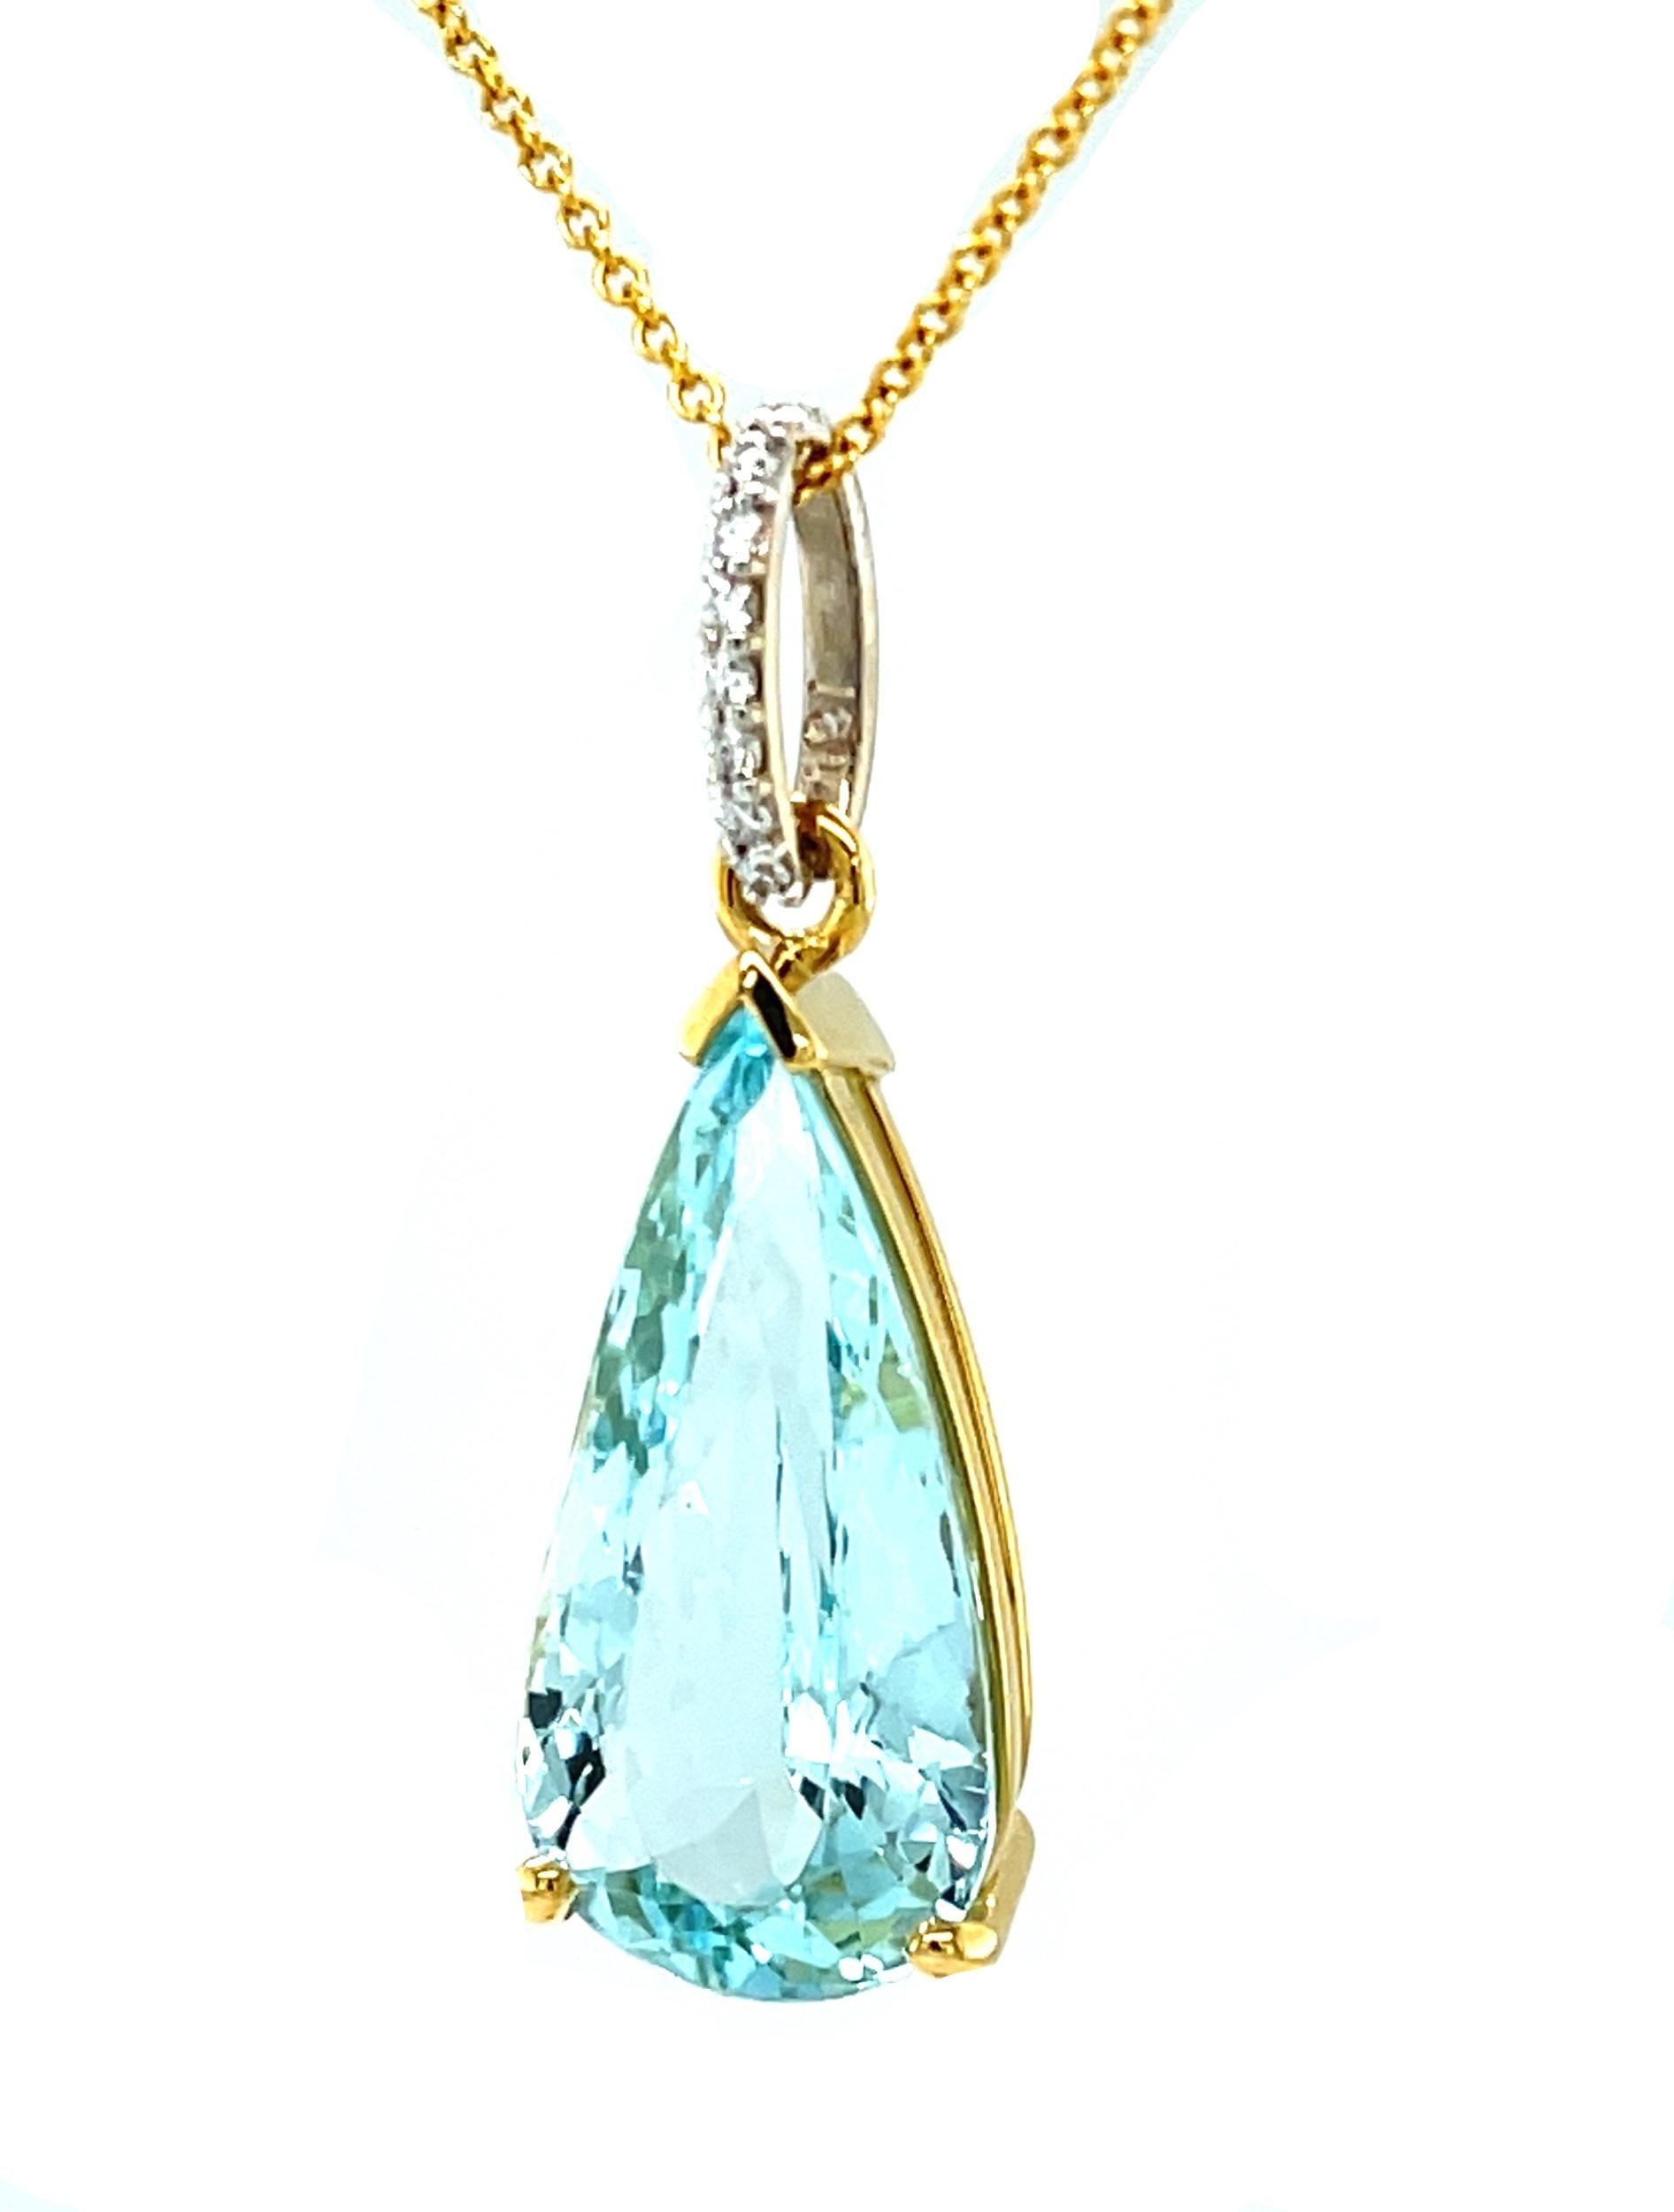 Ce magnifique collier d'aigue-marine et de diamants présente une impressionnante aigue-marine en forme de poire de 7,07 carats sertie dans de l'or jaune 18 carats. L'aigue-marine est une pierre précieuse magnifiquement cristalline, d'un bleu